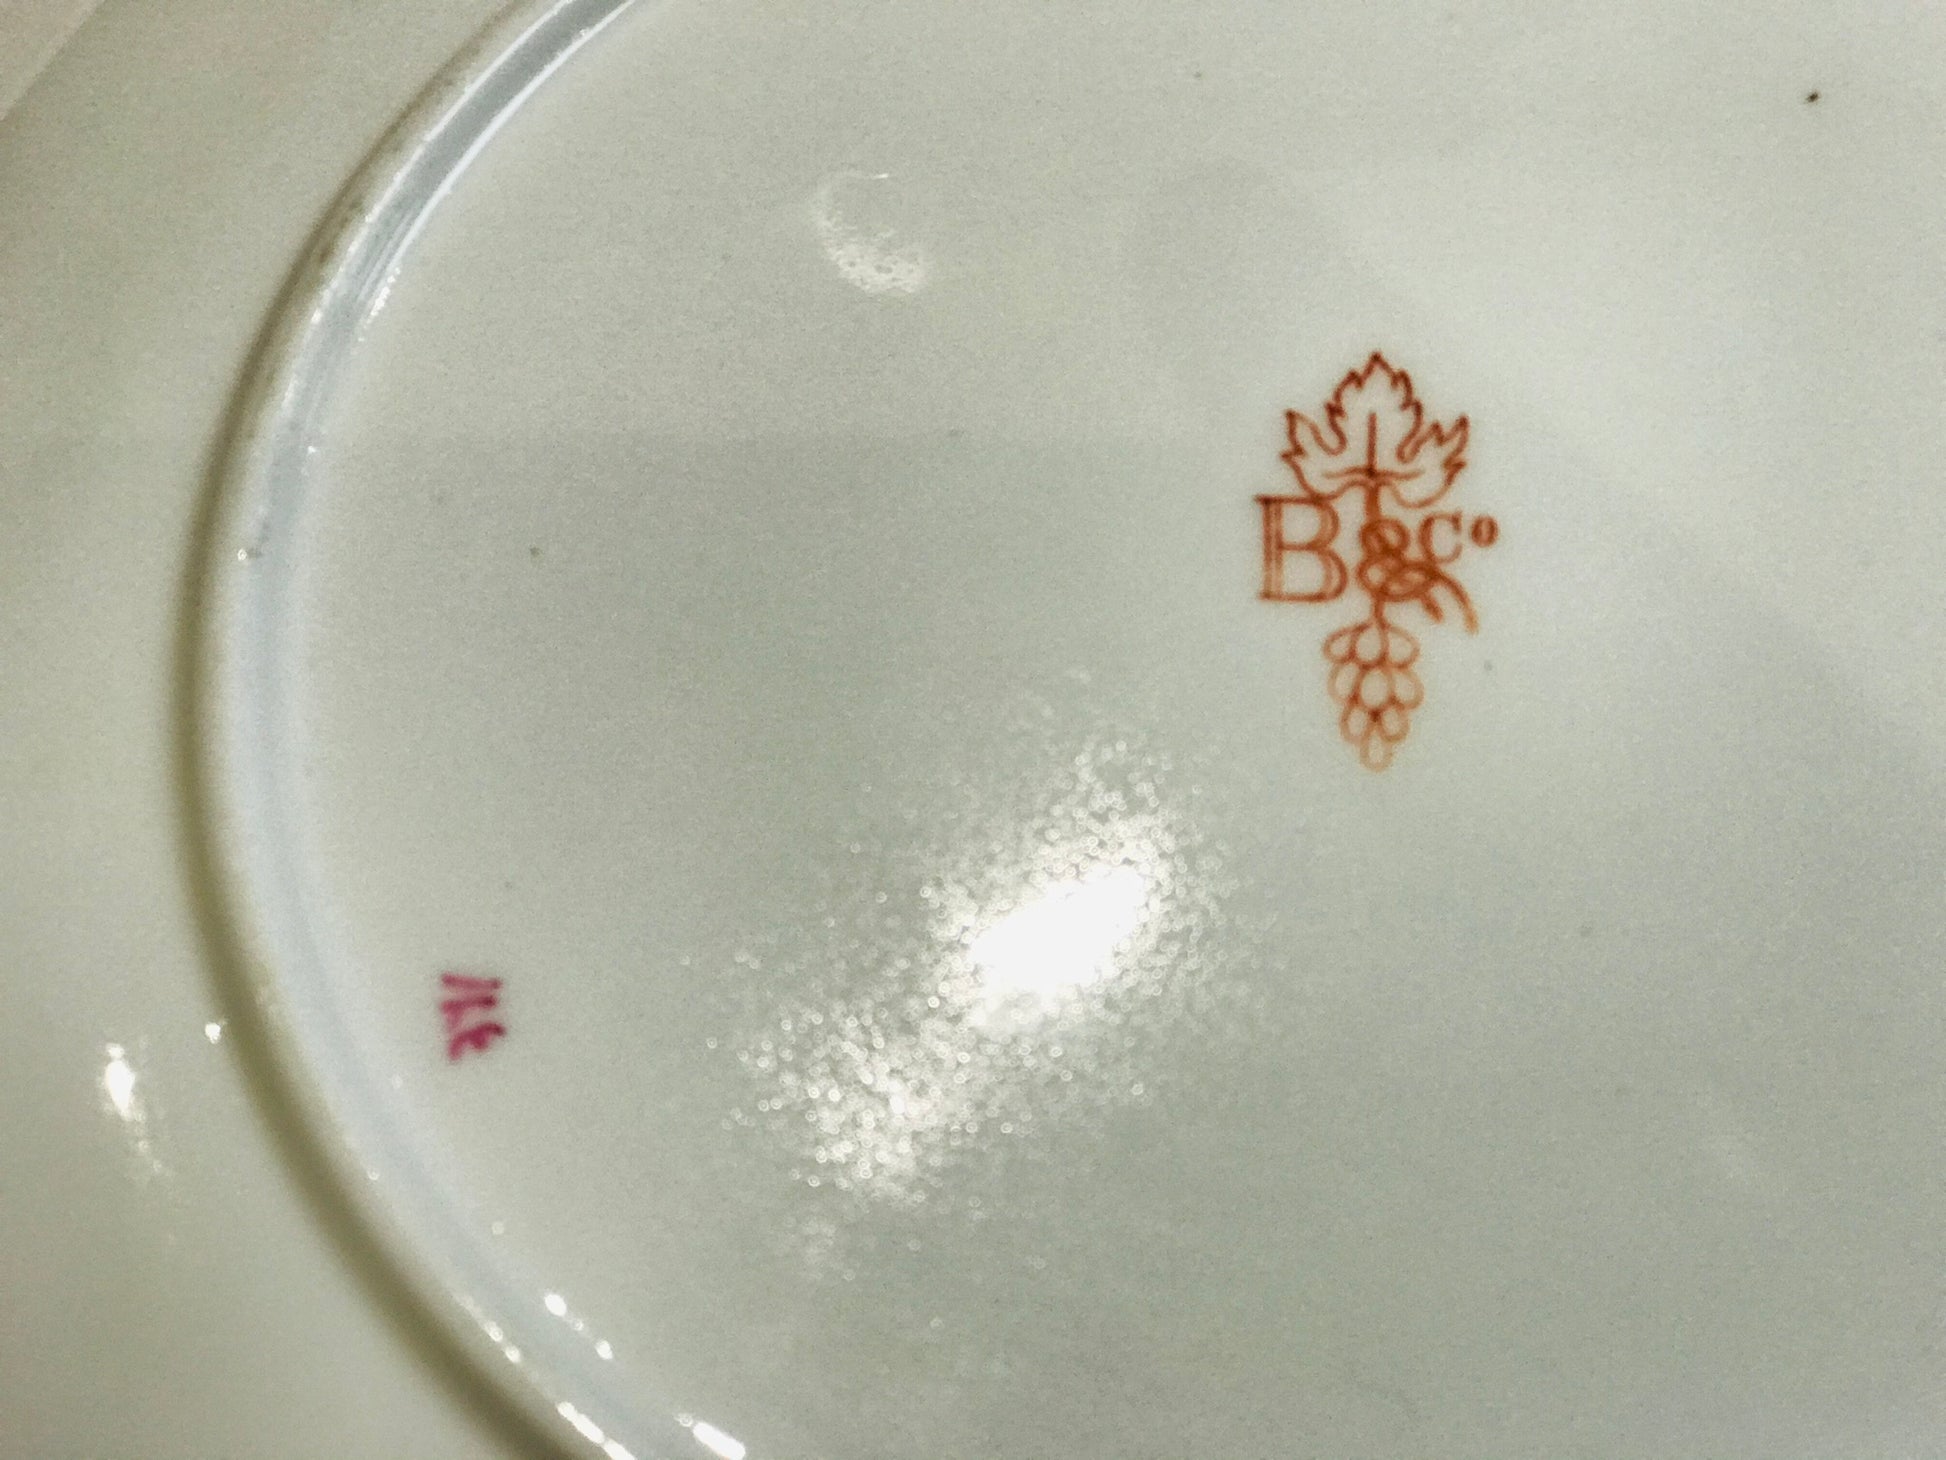 B&Co Antique china Tea cup saucer set